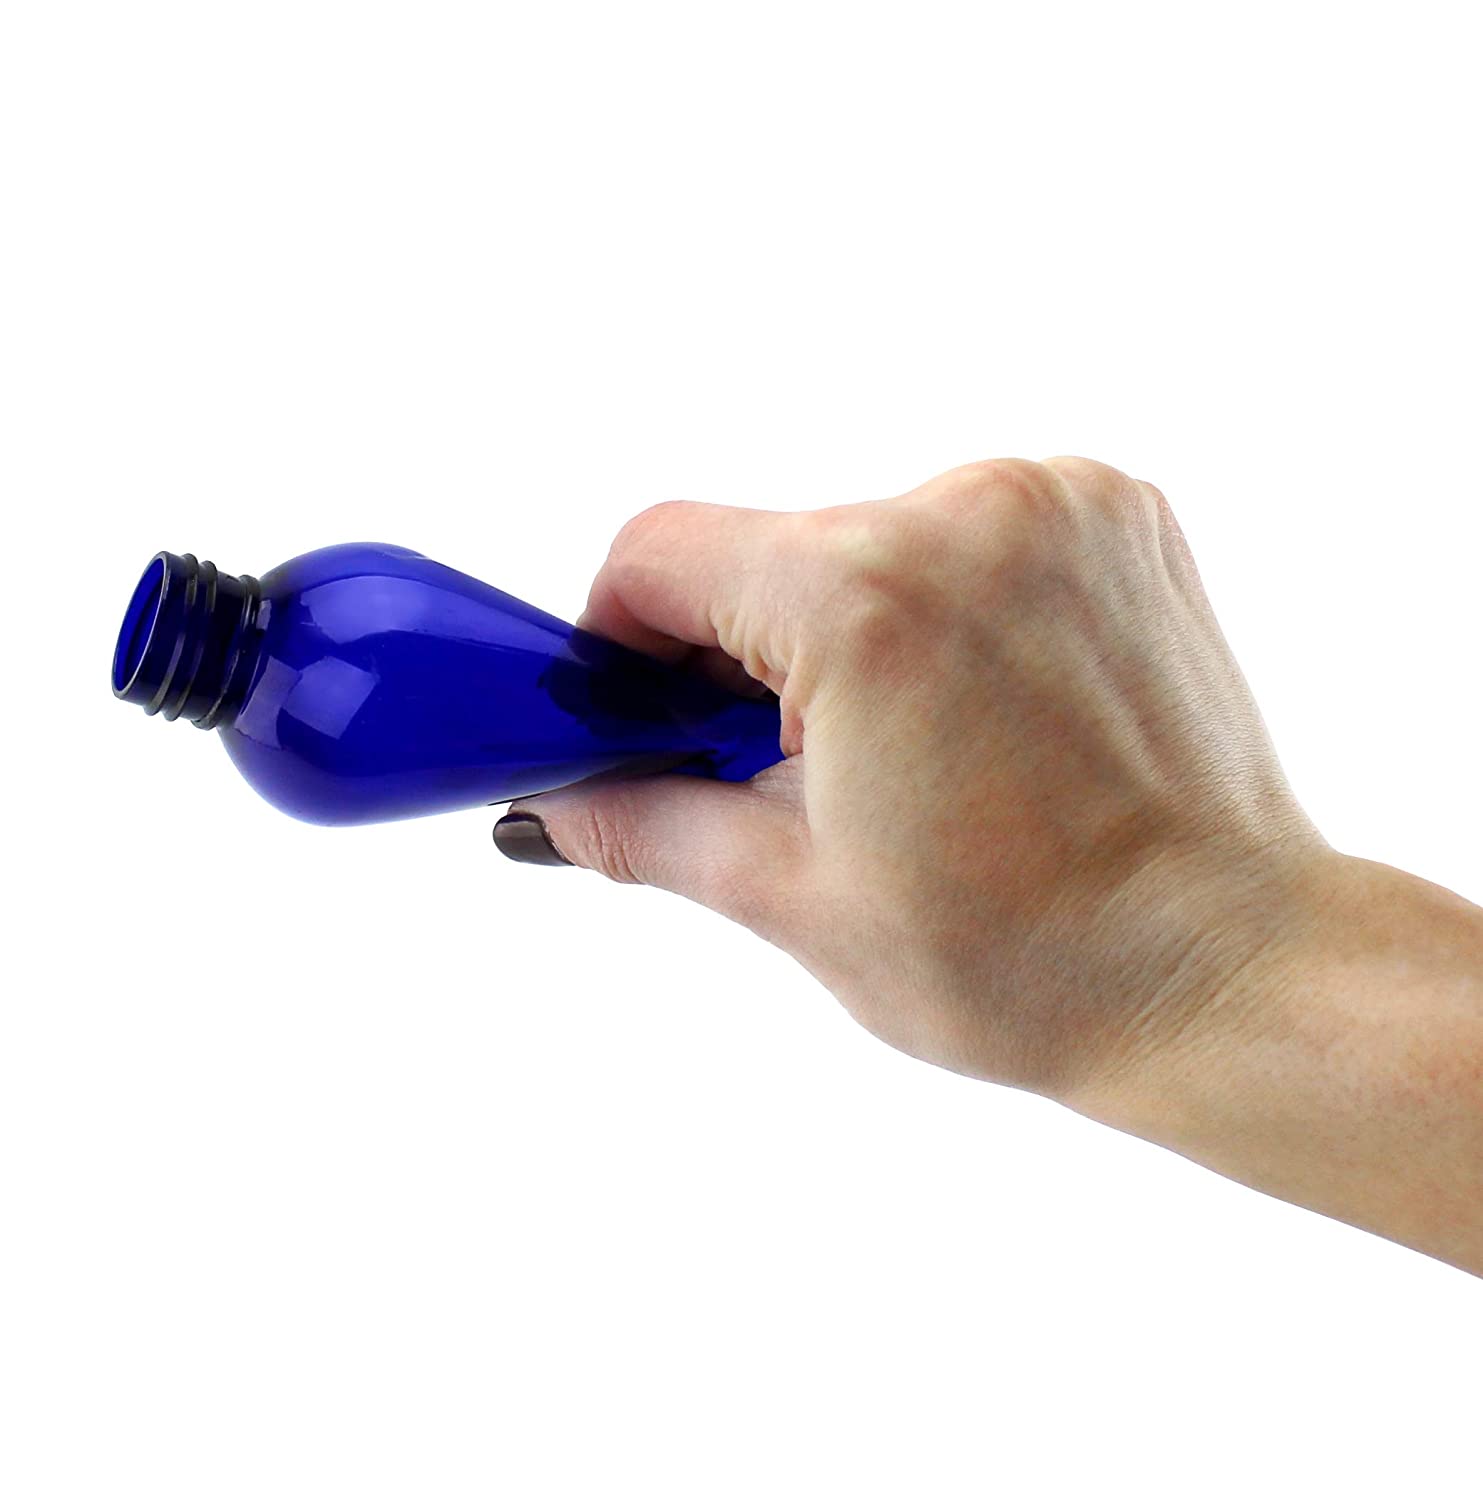 4oz Blue Empty Plastic PET Spray Bottles w/Fine Mist Atomizers (120-Pack) - SH_1420_BUNDLE